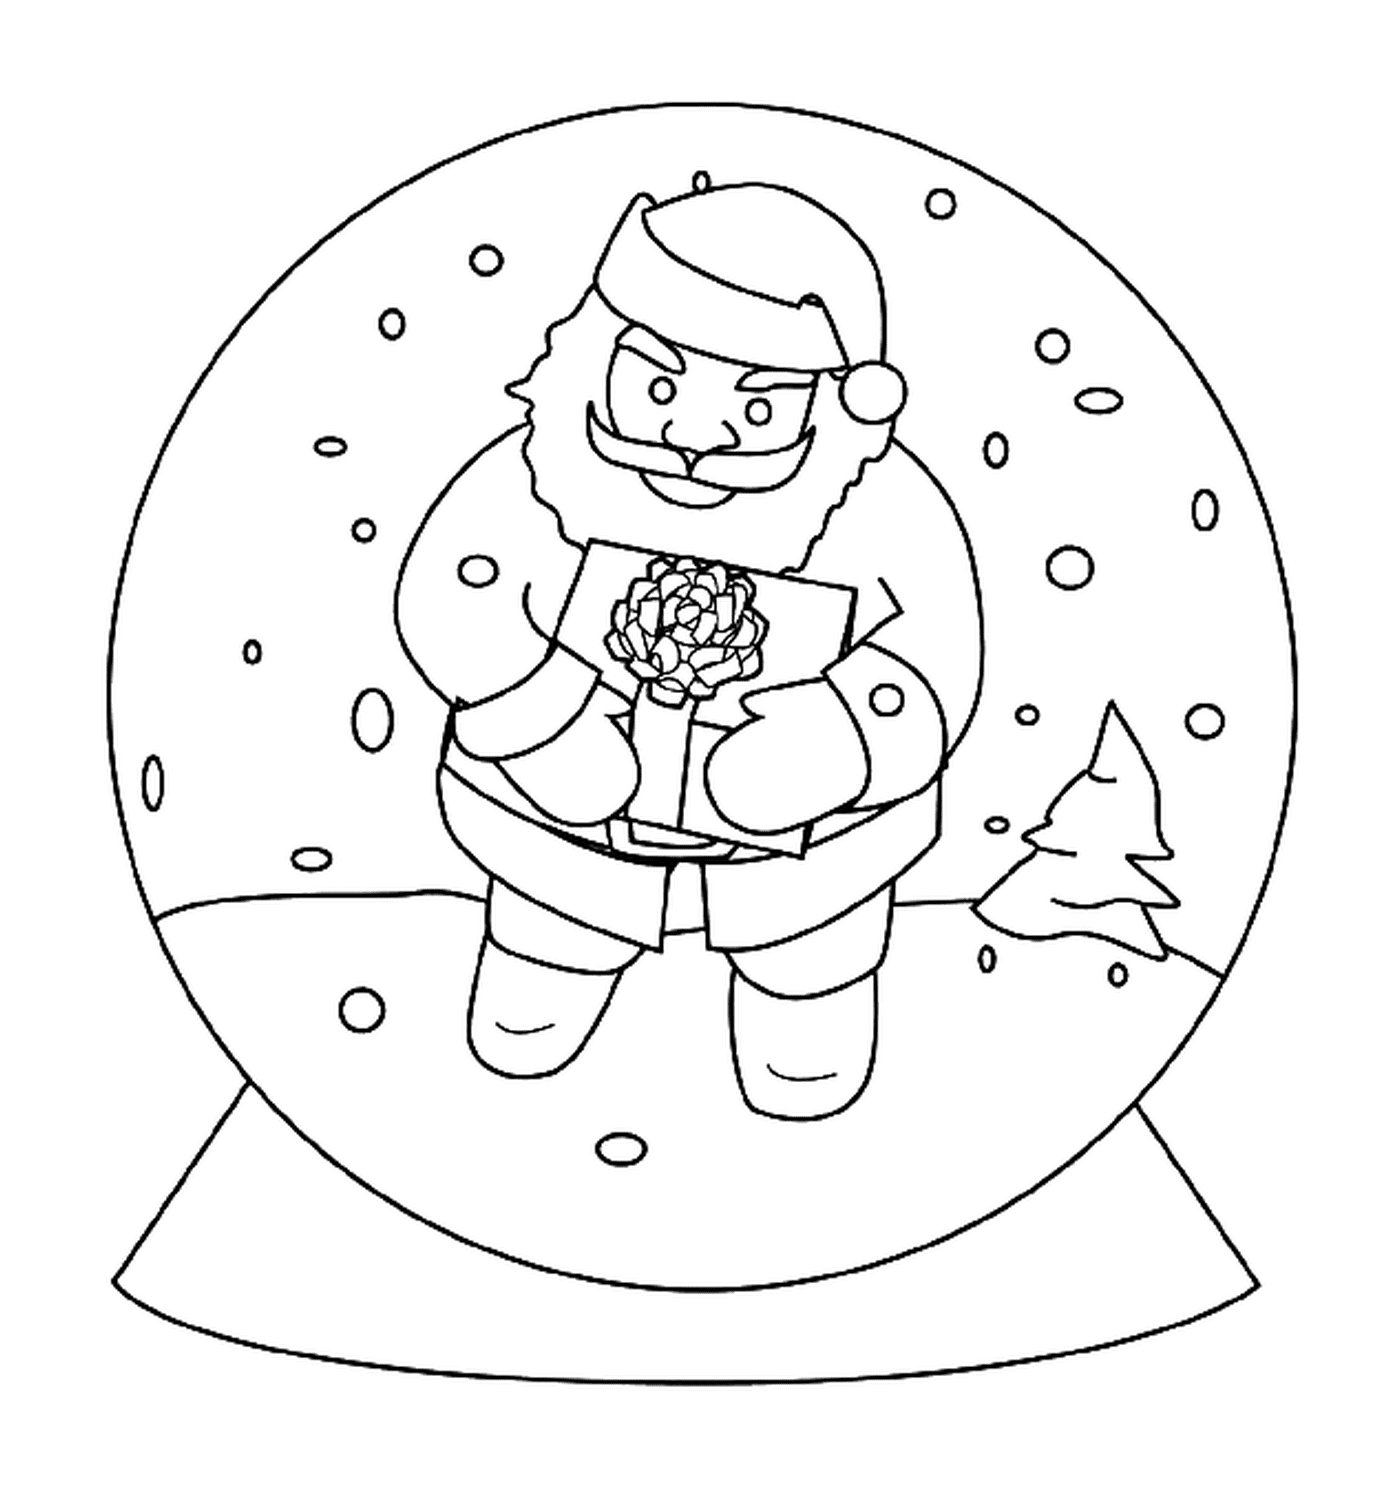  雪球中的圣诞老人 